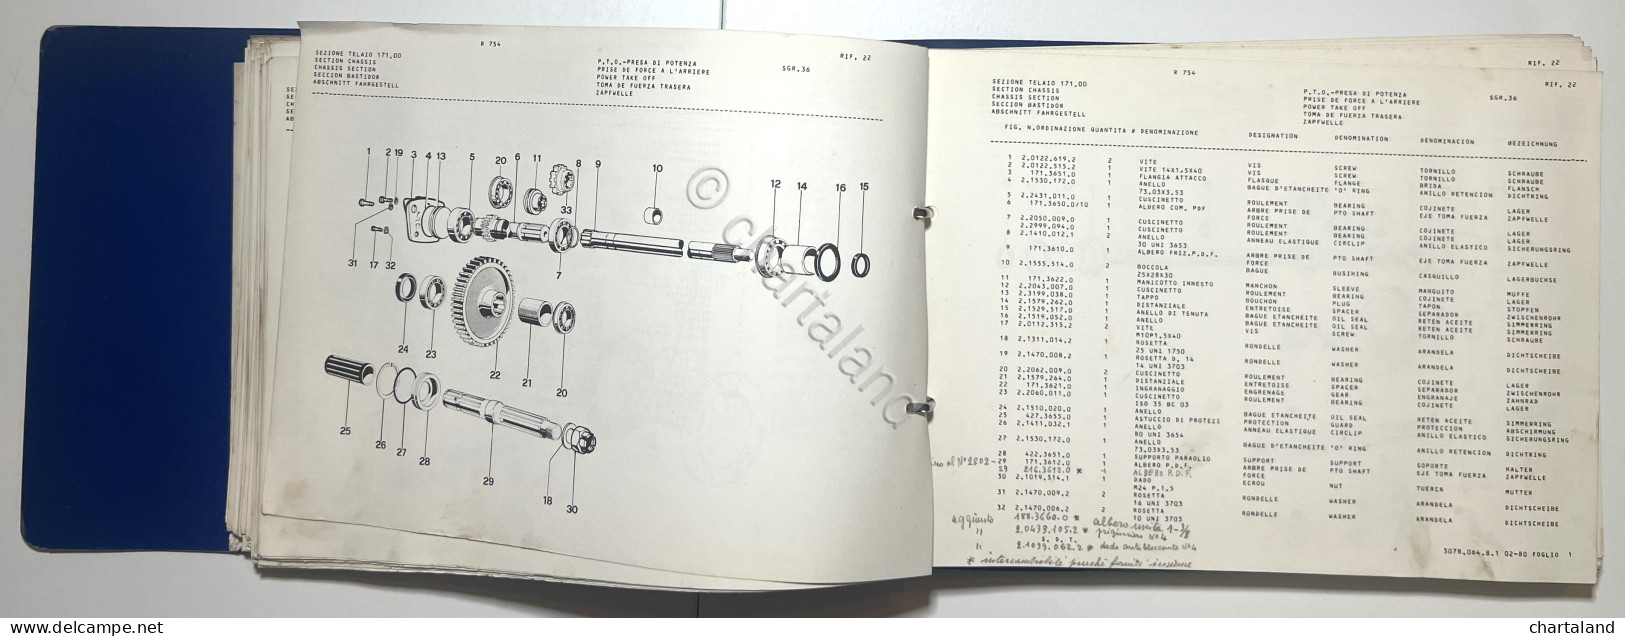 Catalogo Parti Per Ricambio Lamborghini Trattori - R 754 Potenza Blu - Ed. 1982 - Other & Unclassified